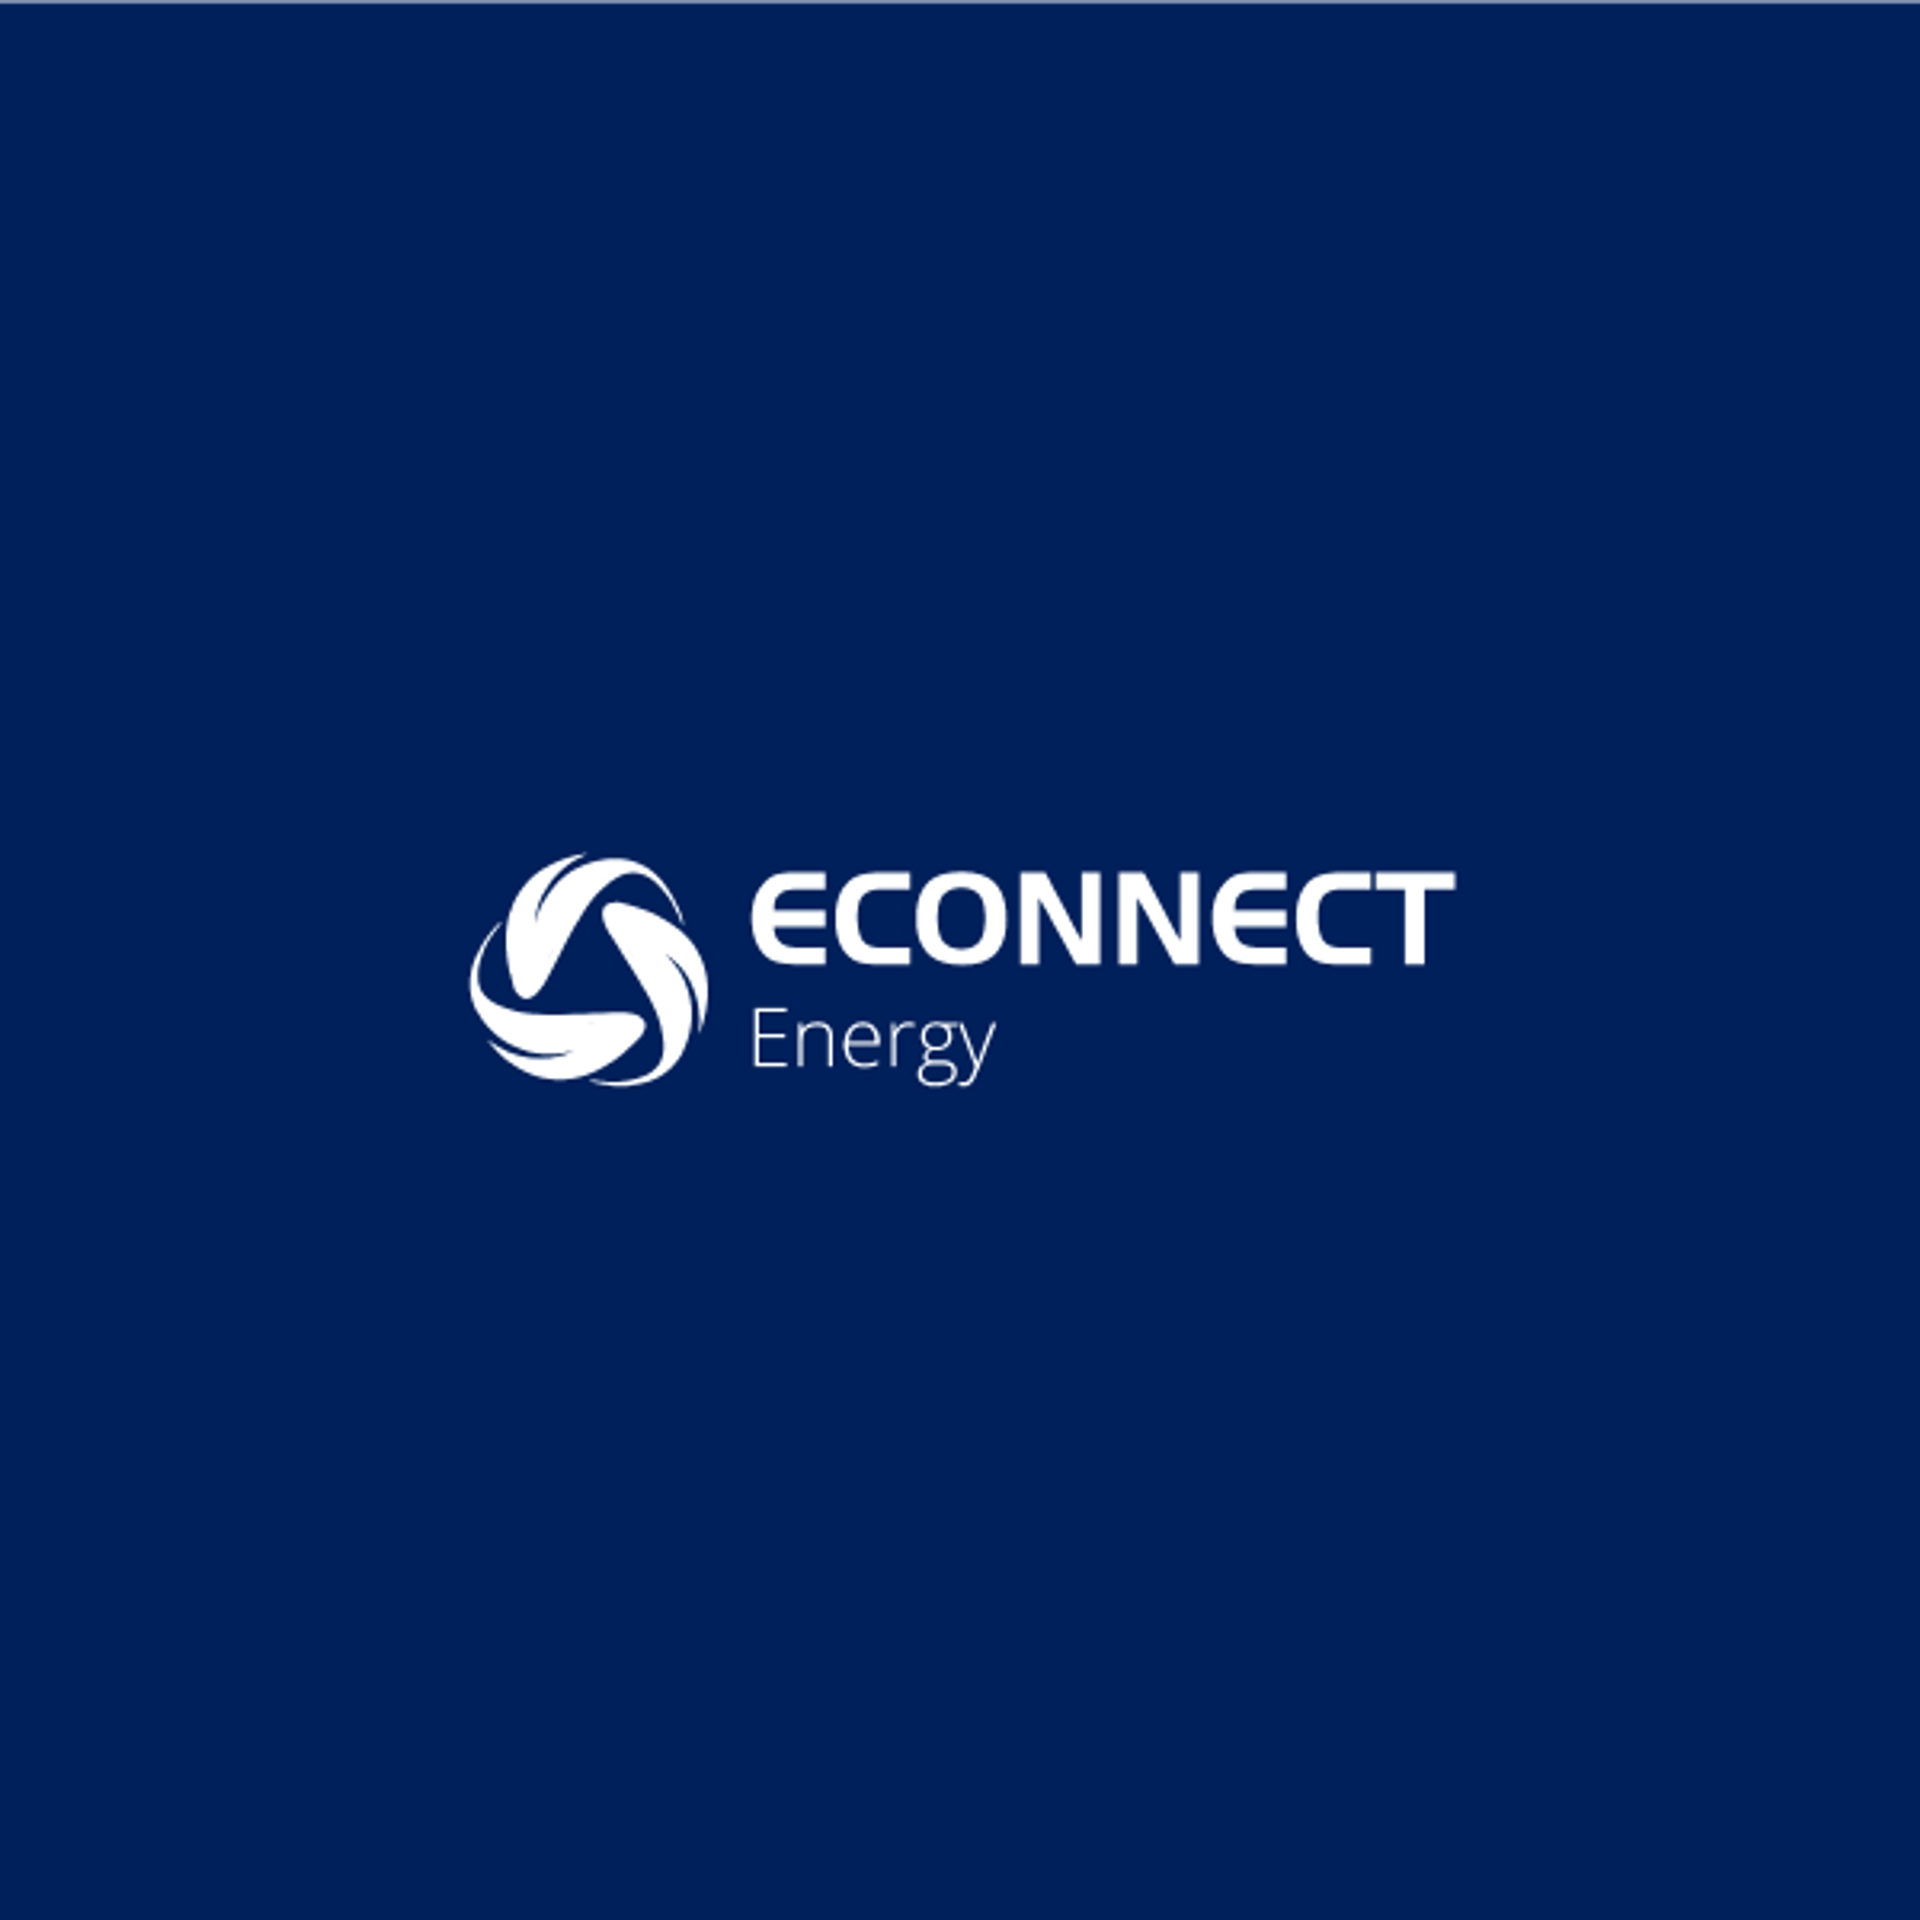 Econnect logo